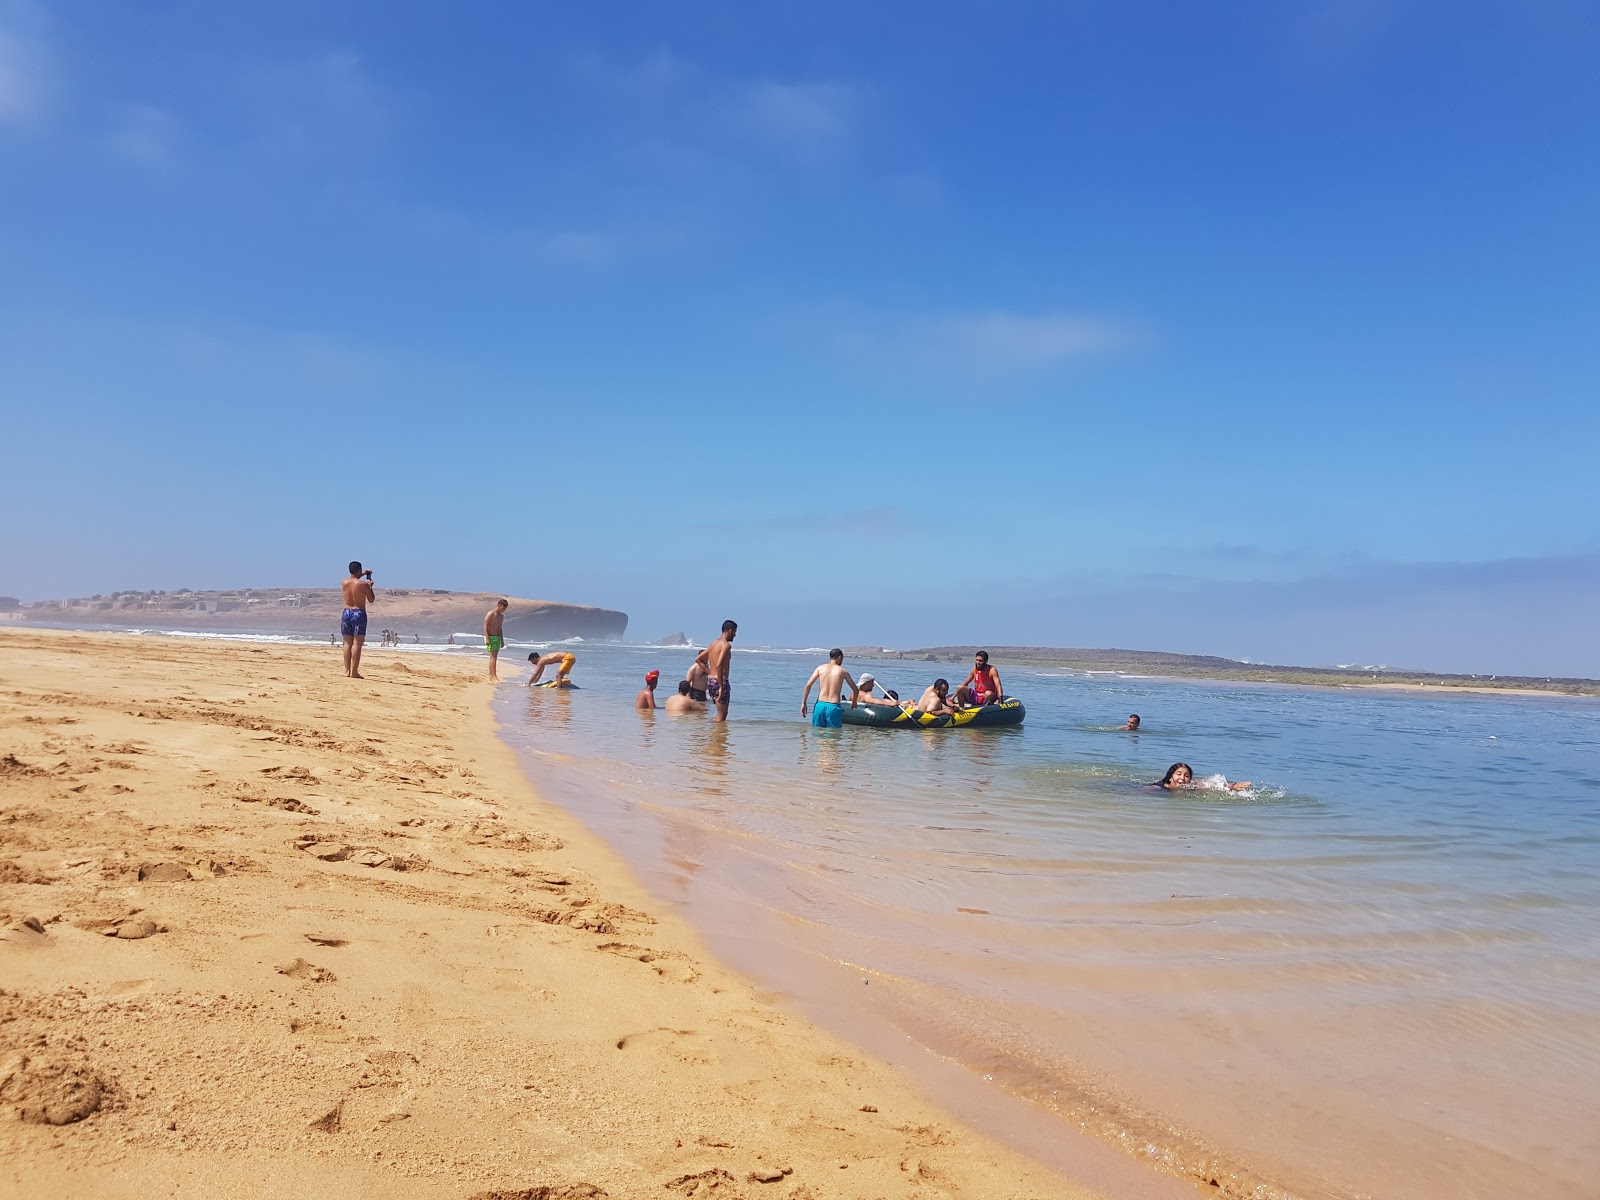 Foto di Sidi Belkheir Beach shaty sydy balkhyr con baie piccole